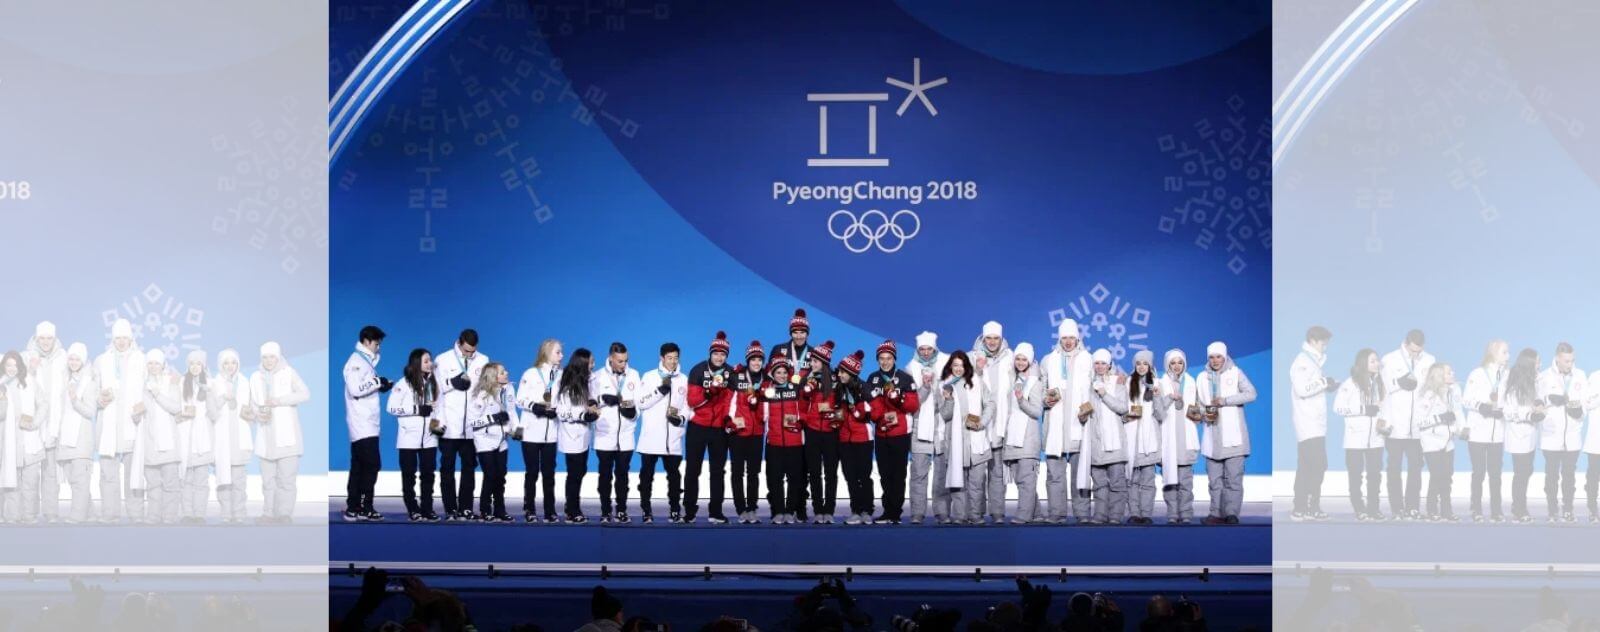 La Cérémonie de Remise des Médailles à  PyeongChang